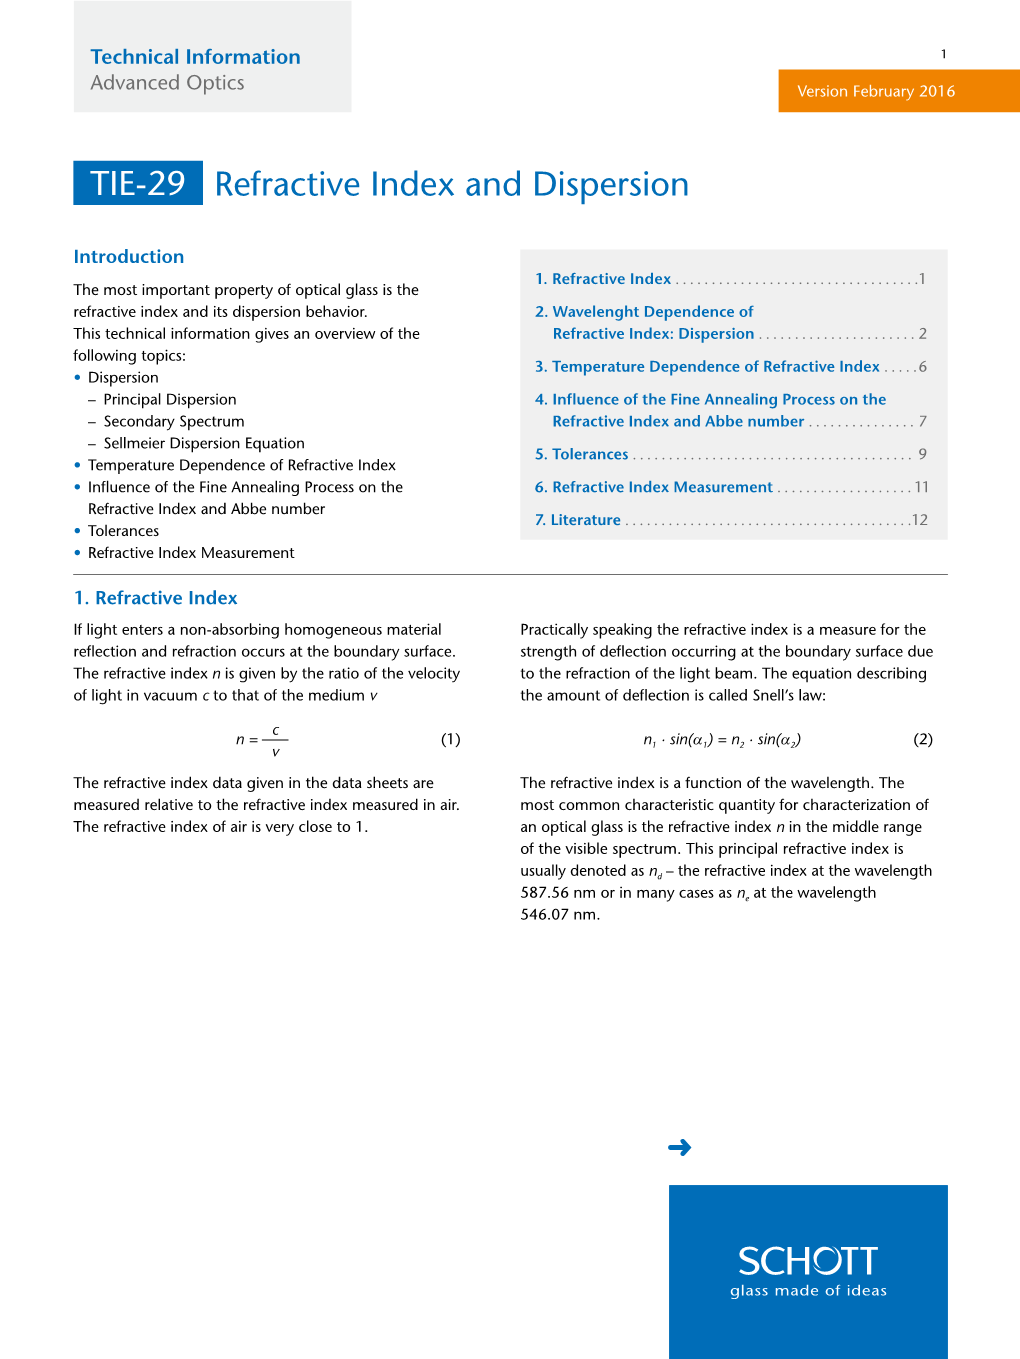 Refractive Index and Dispersion TIE-29